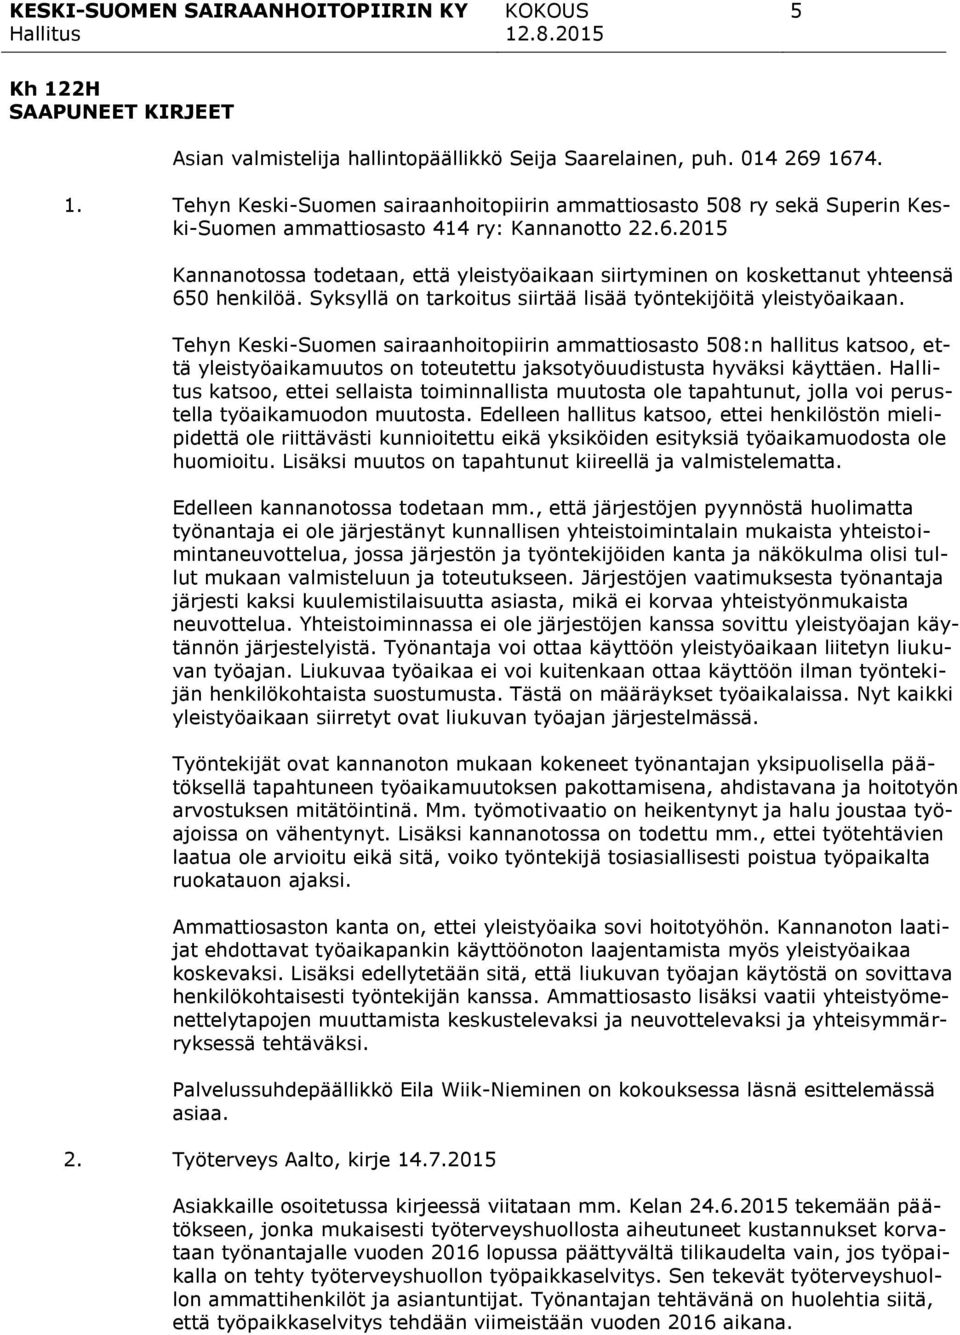 Tehyn Keski-Suomen sairaanhoitopiirin ammattiosasto 508:n hallitus katsoo, että yleistyöaikamuutos on toteutettu jaksotyöuudistusta hyväksi käyttäen.